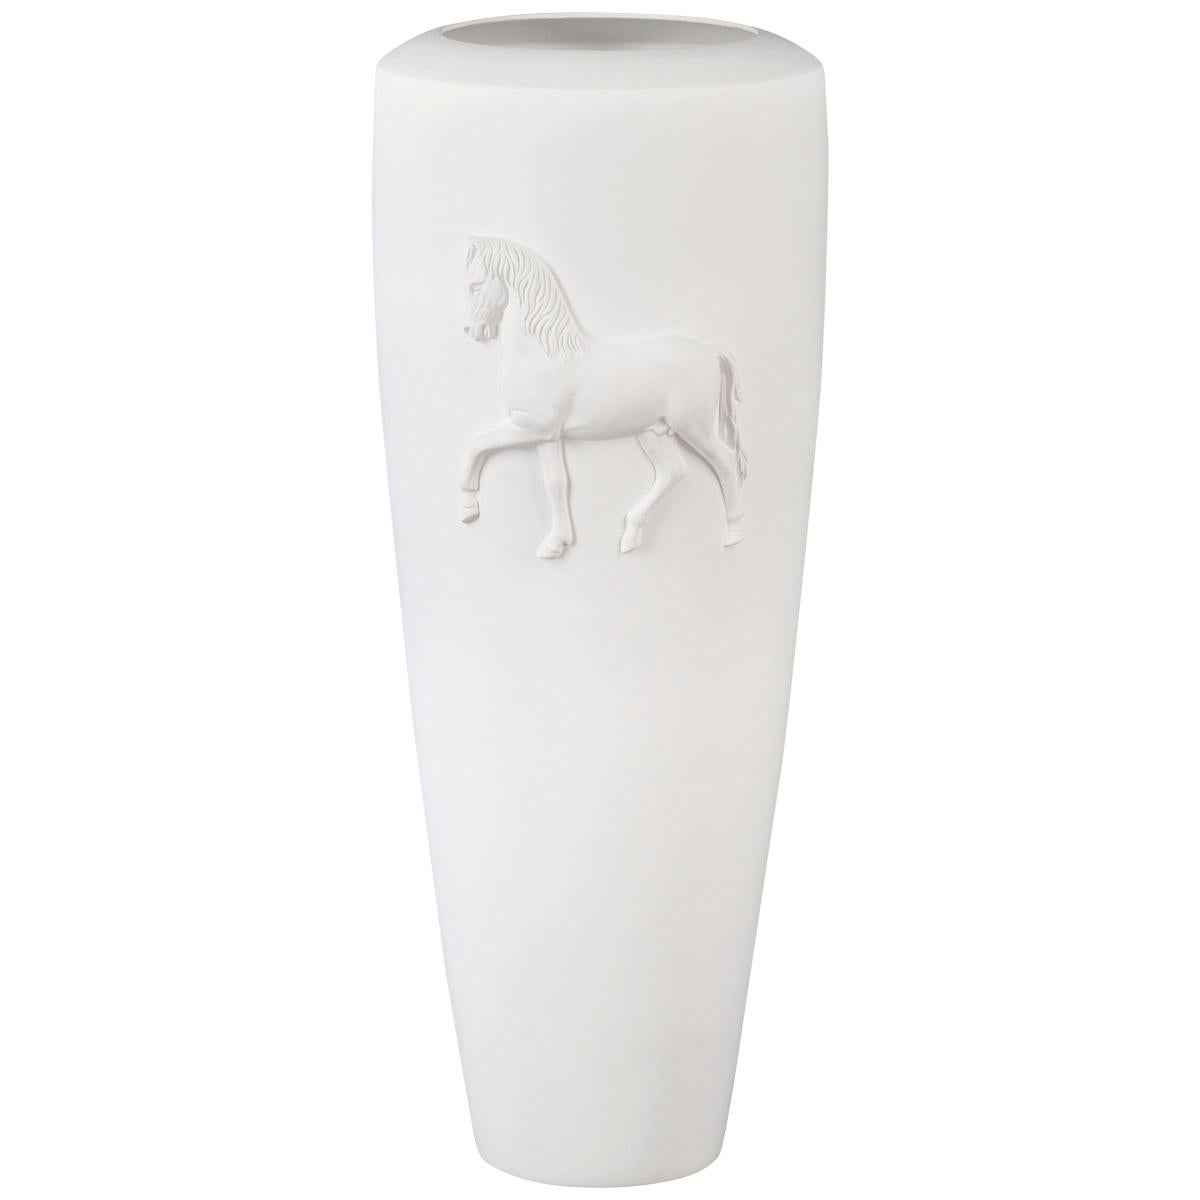 Vase Obice Horse Relief, Matt White Ceramic, Italy